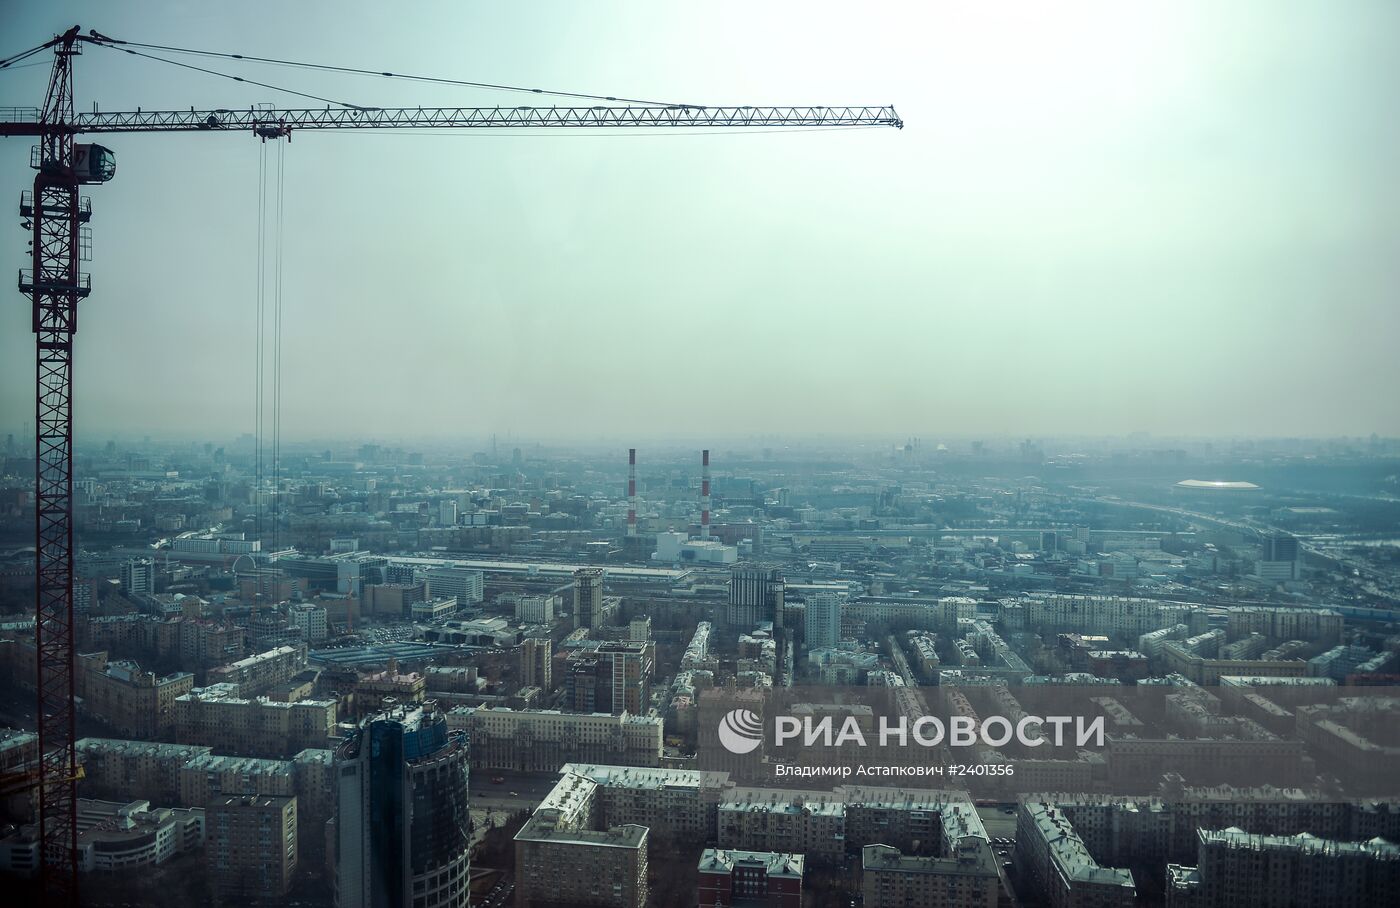 Смотровая площадка открылась в бизнес-центре "Москва-Сити"